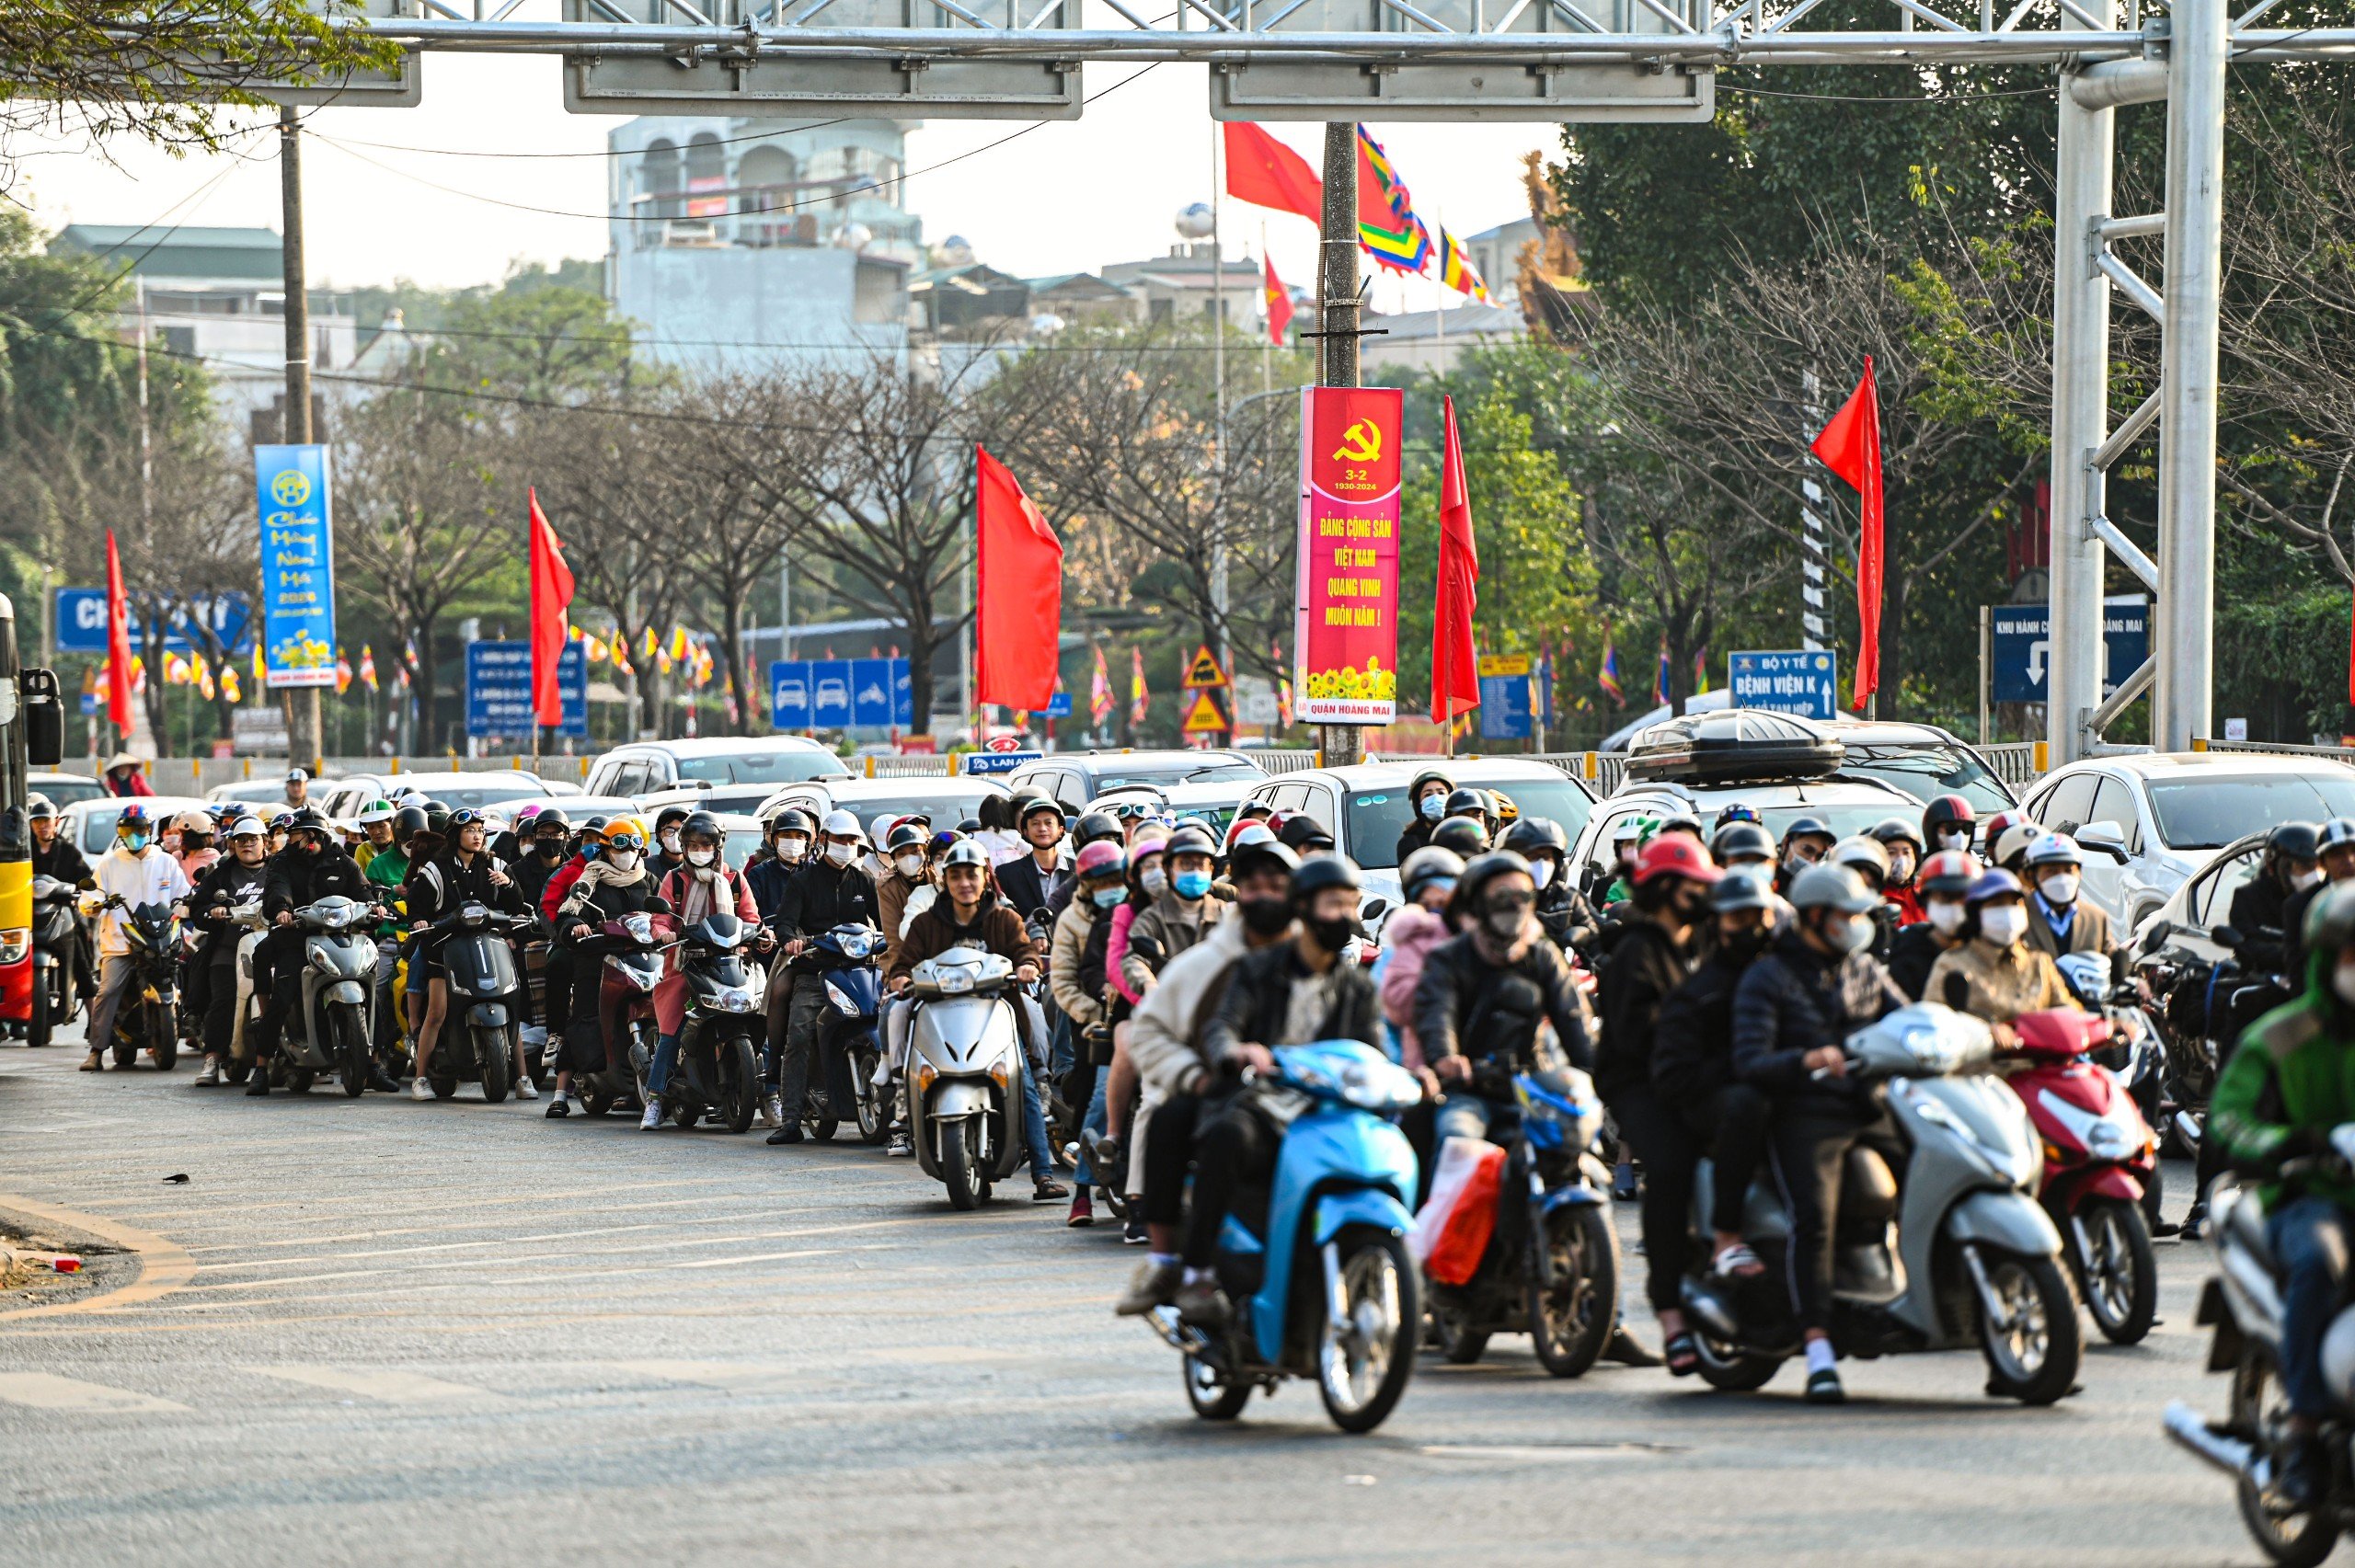 Người dân đổ về Hà Nội dù chưa hết kỳ nghỉ Tết, cửa ngõ Thủ đô ùn tắc kéo dài- Ảnh 4.